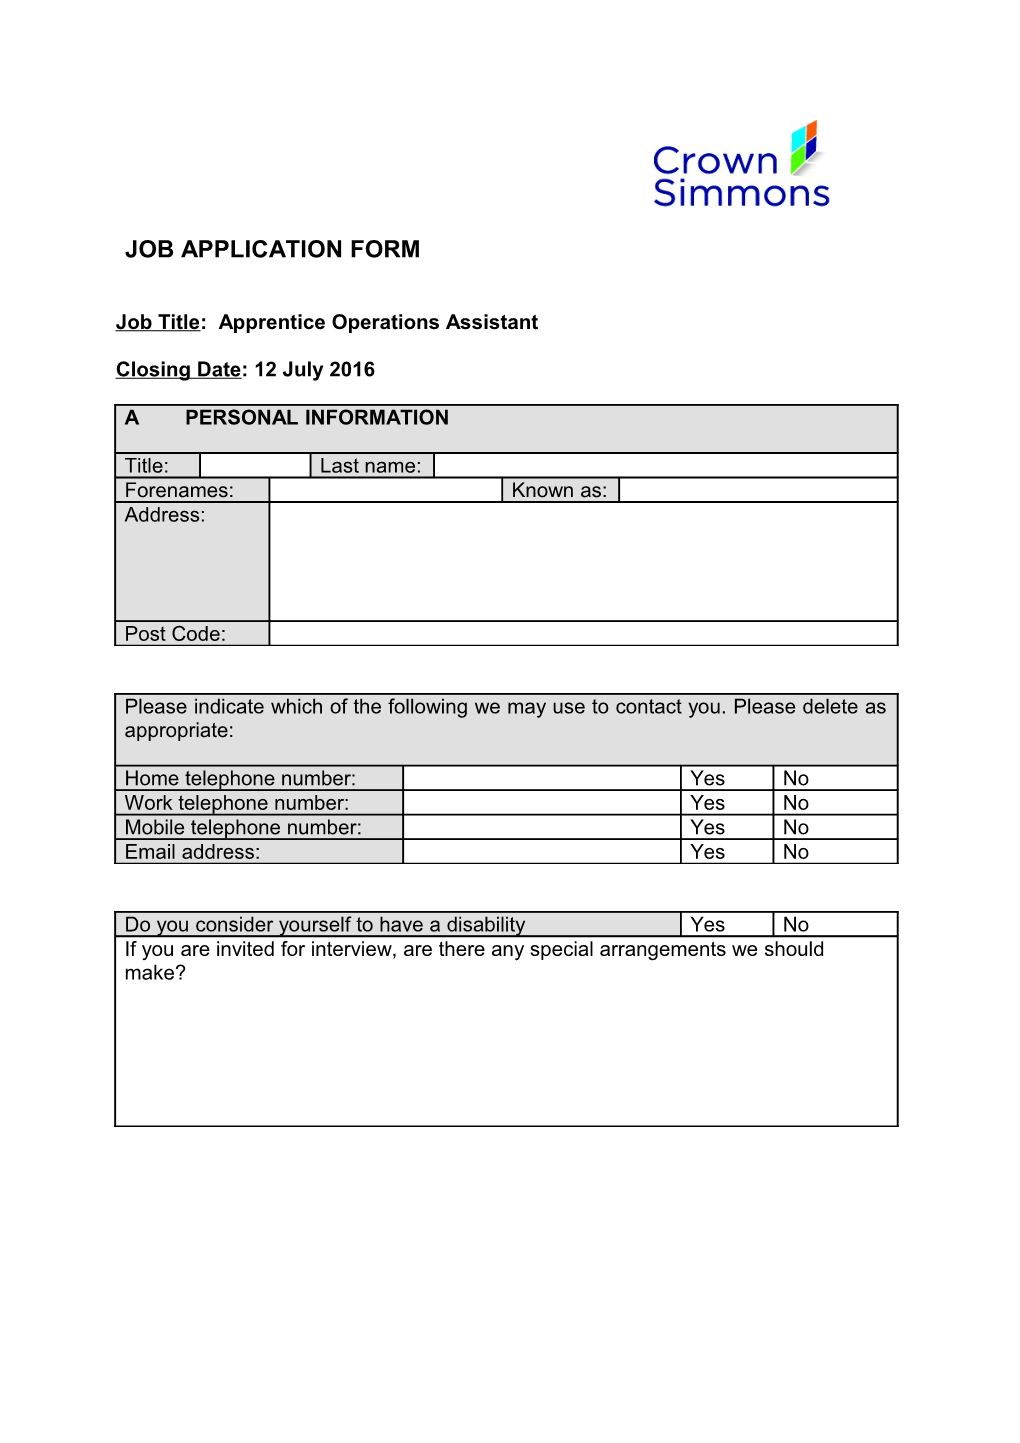 Job Title: Apprentice Operations Assistant